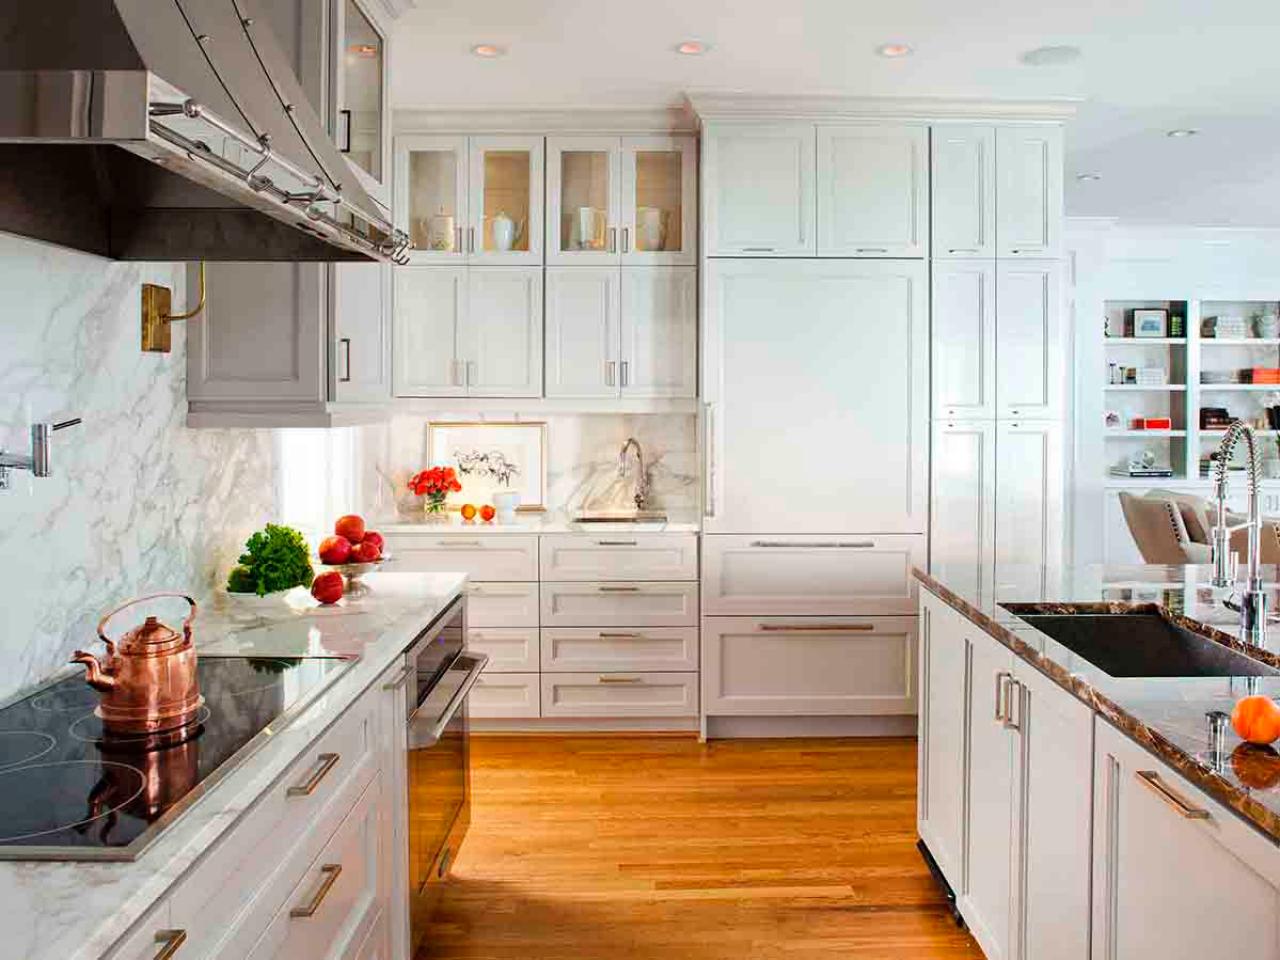 Cabinet design kitchen